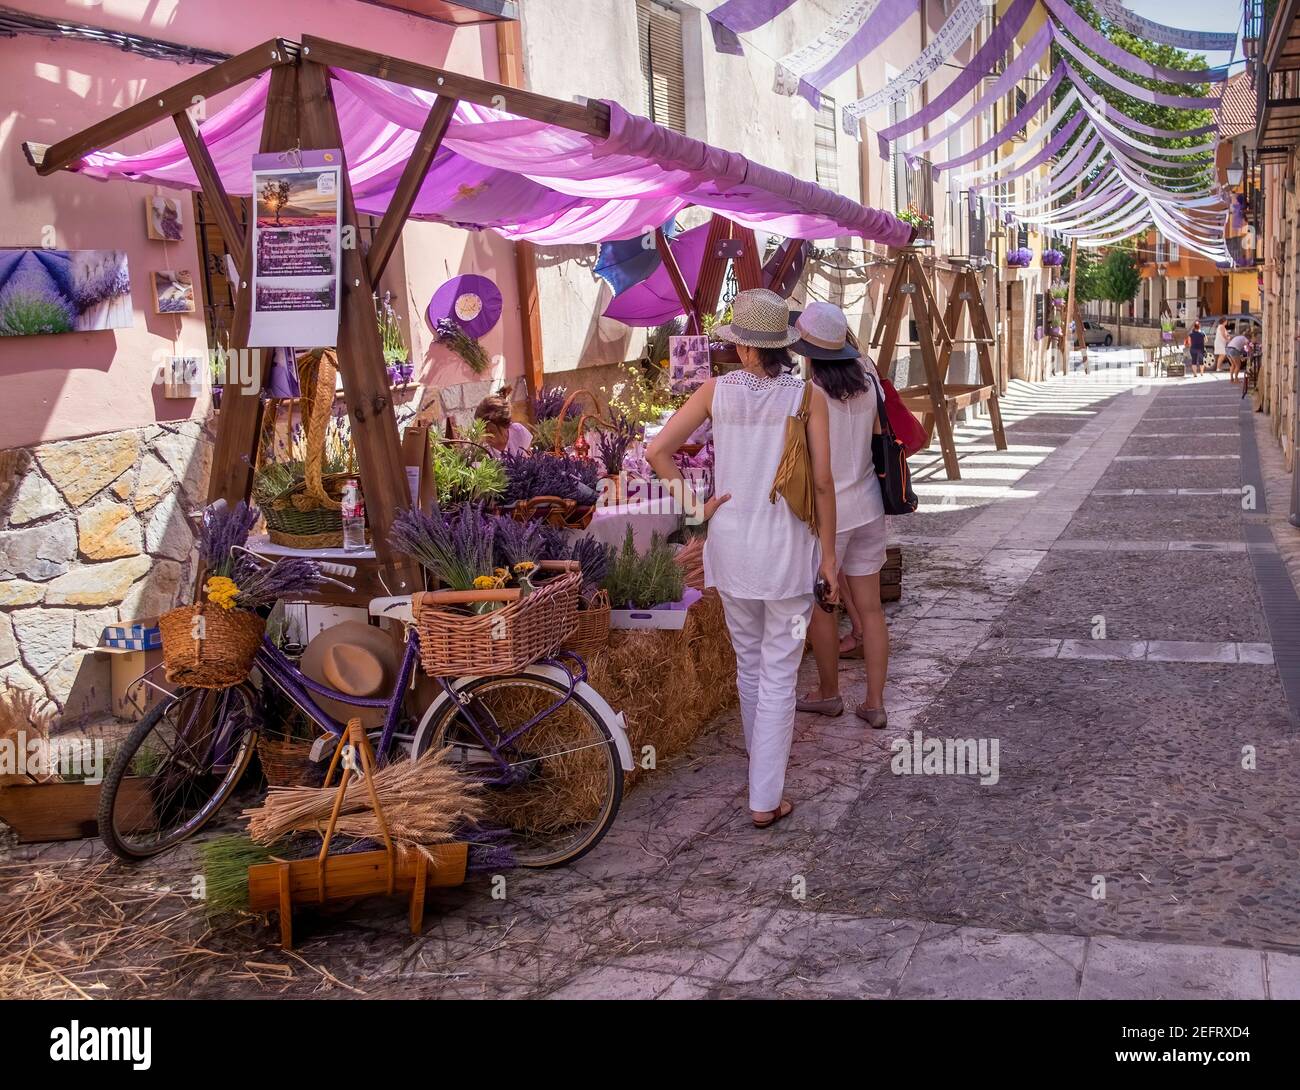 Bancarella del mercato di strada al mercato del festival della lavanda in Brihuega che vende i prodotti di lavanda bouquet, Guadalajara, Spagna Foto Stock